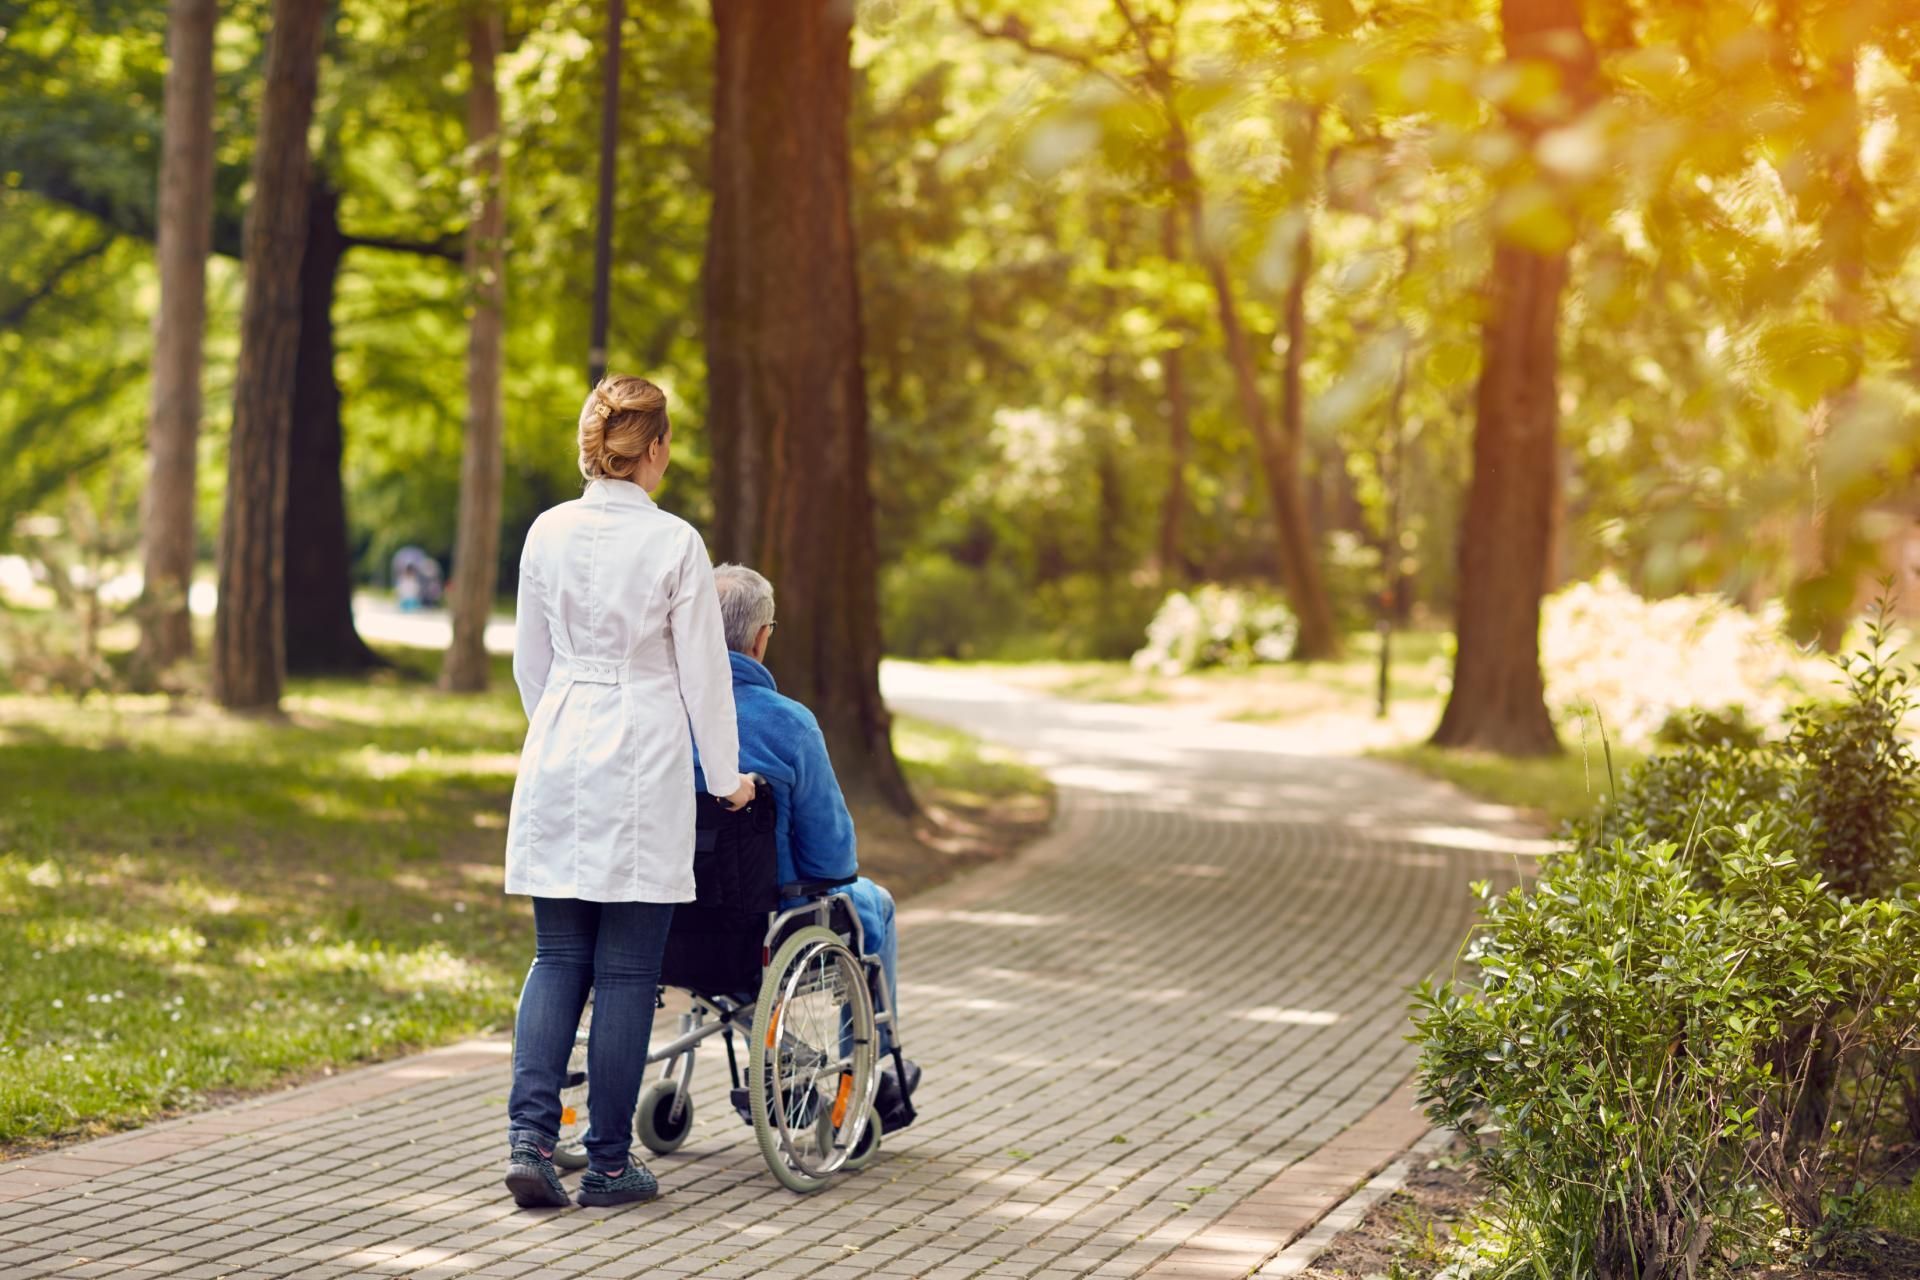 fairpflegt GbR – eine Frau in weißer Jacke und ein Mann im Rollstuhl gehen gemeinsam durch einen Wald